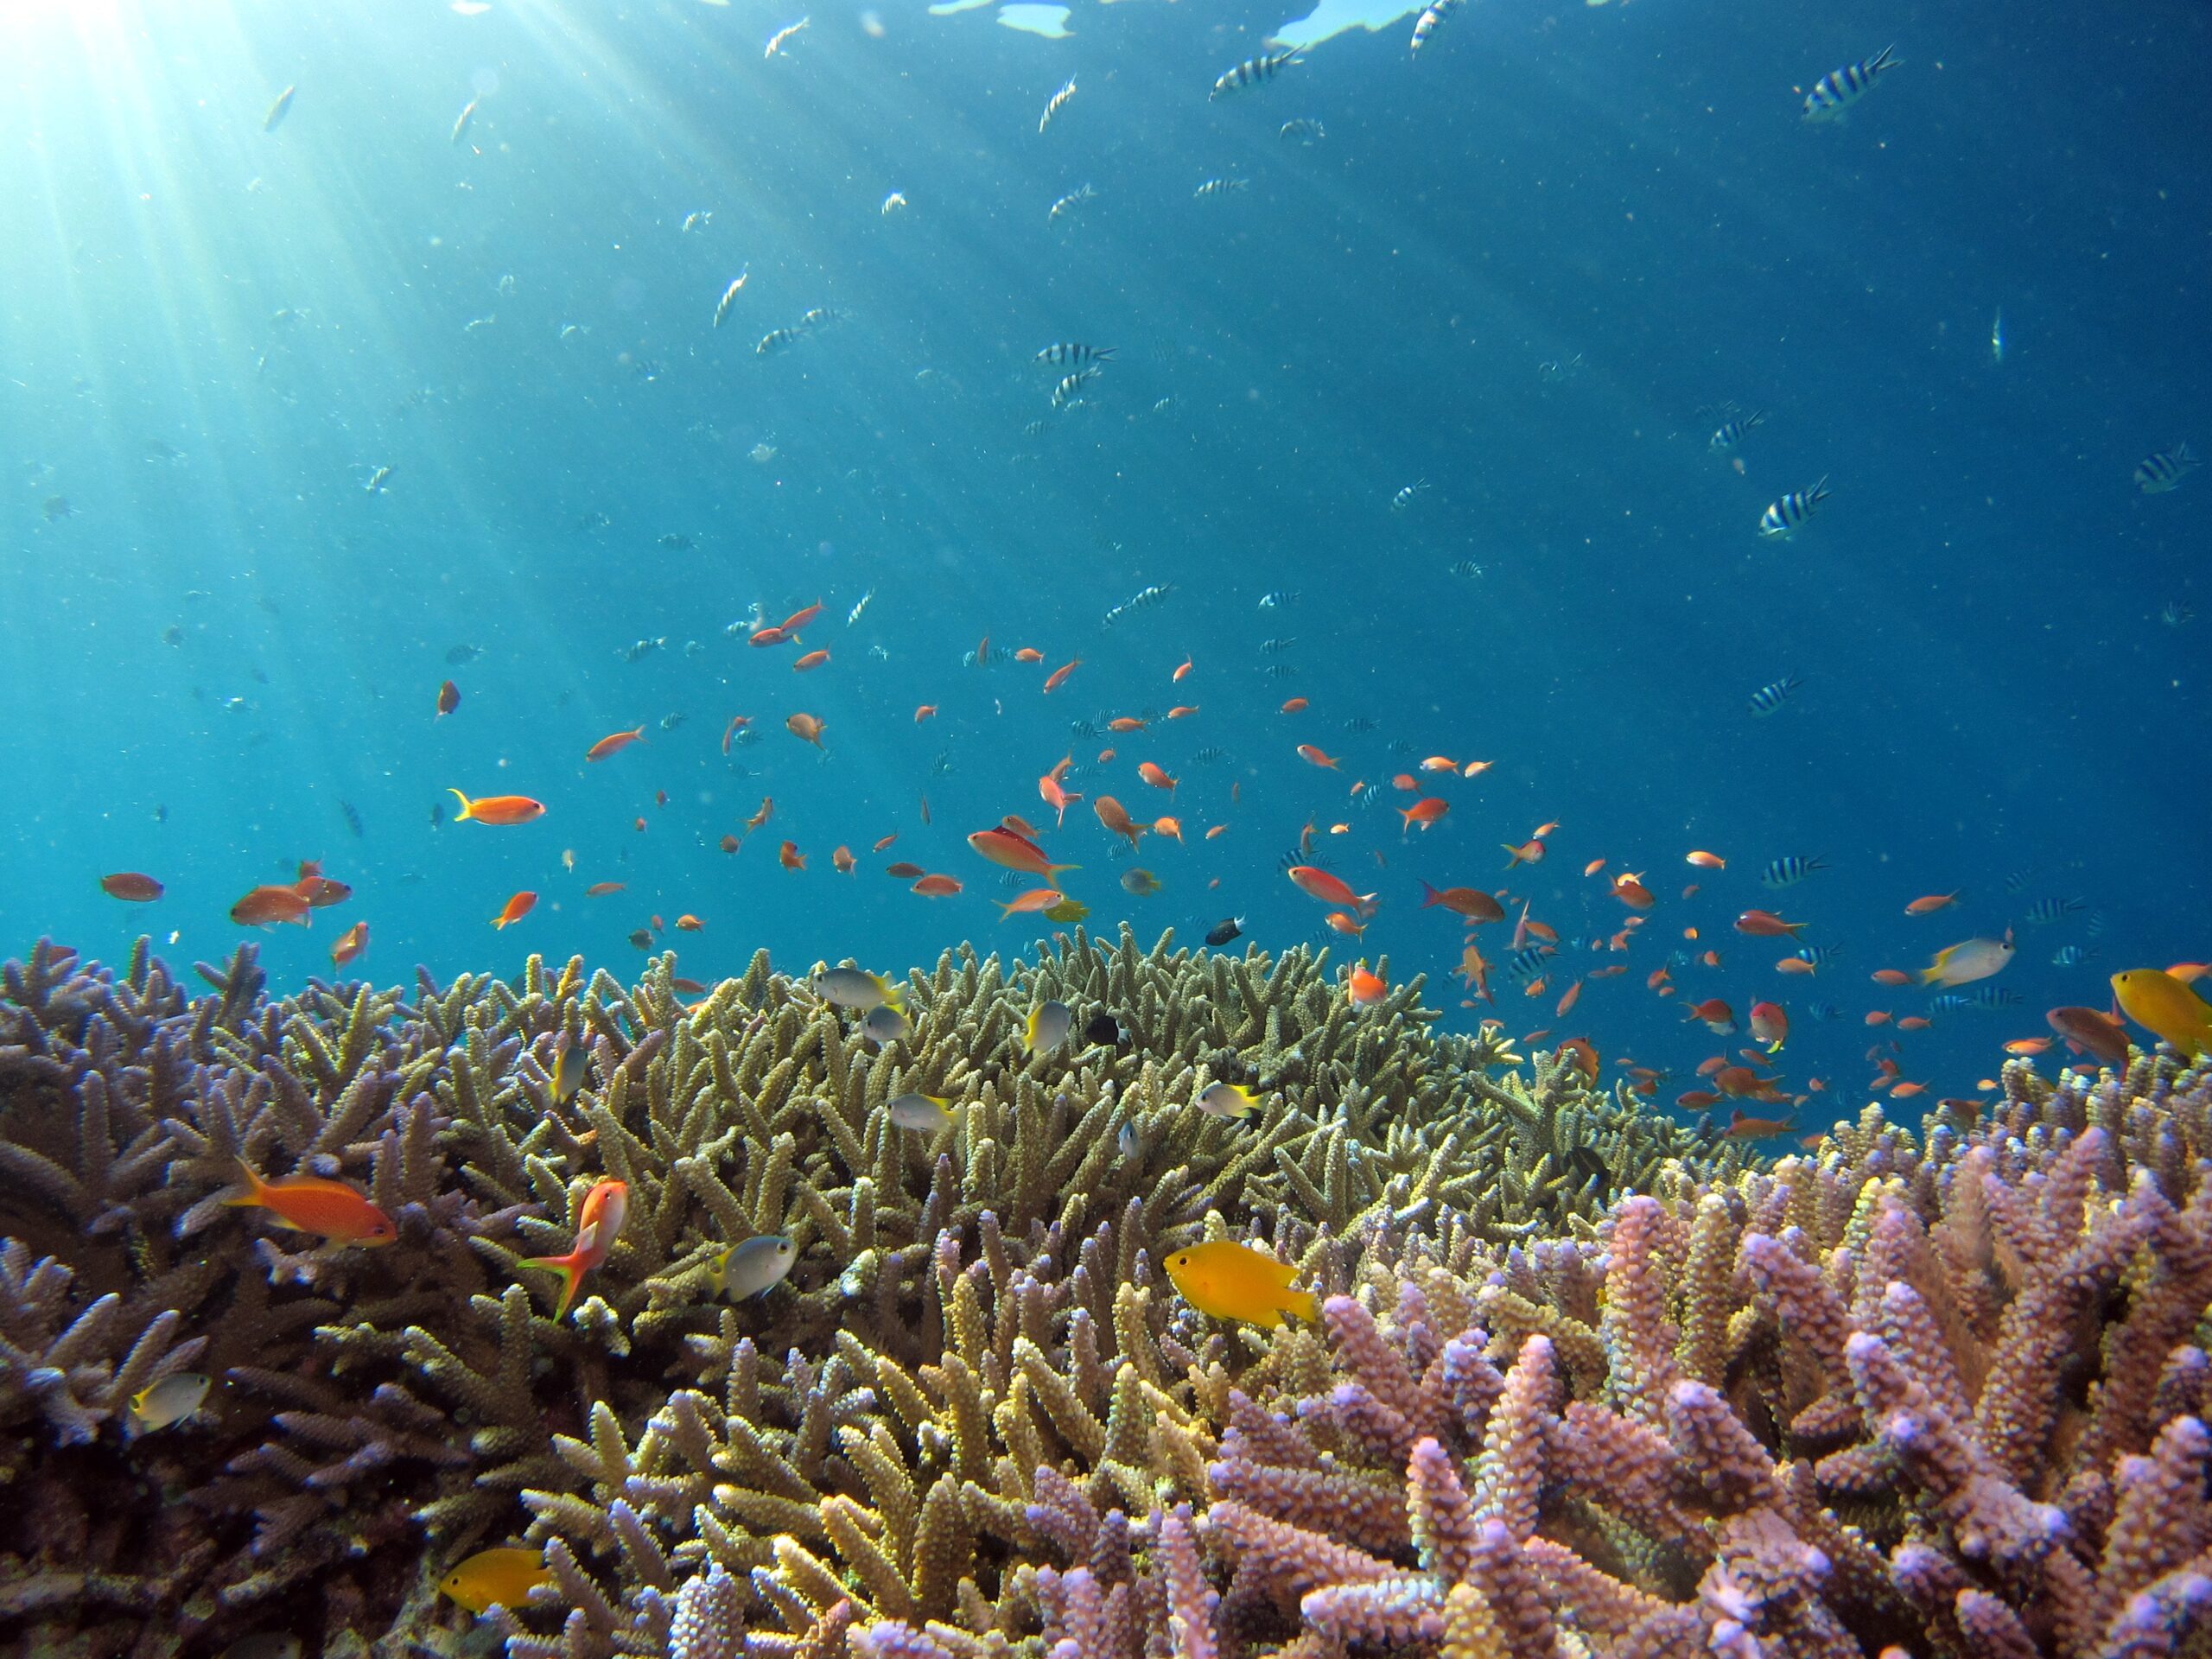 Cambio climático y su afectaciones a ecosistemas marinos. Foto de Unsplash